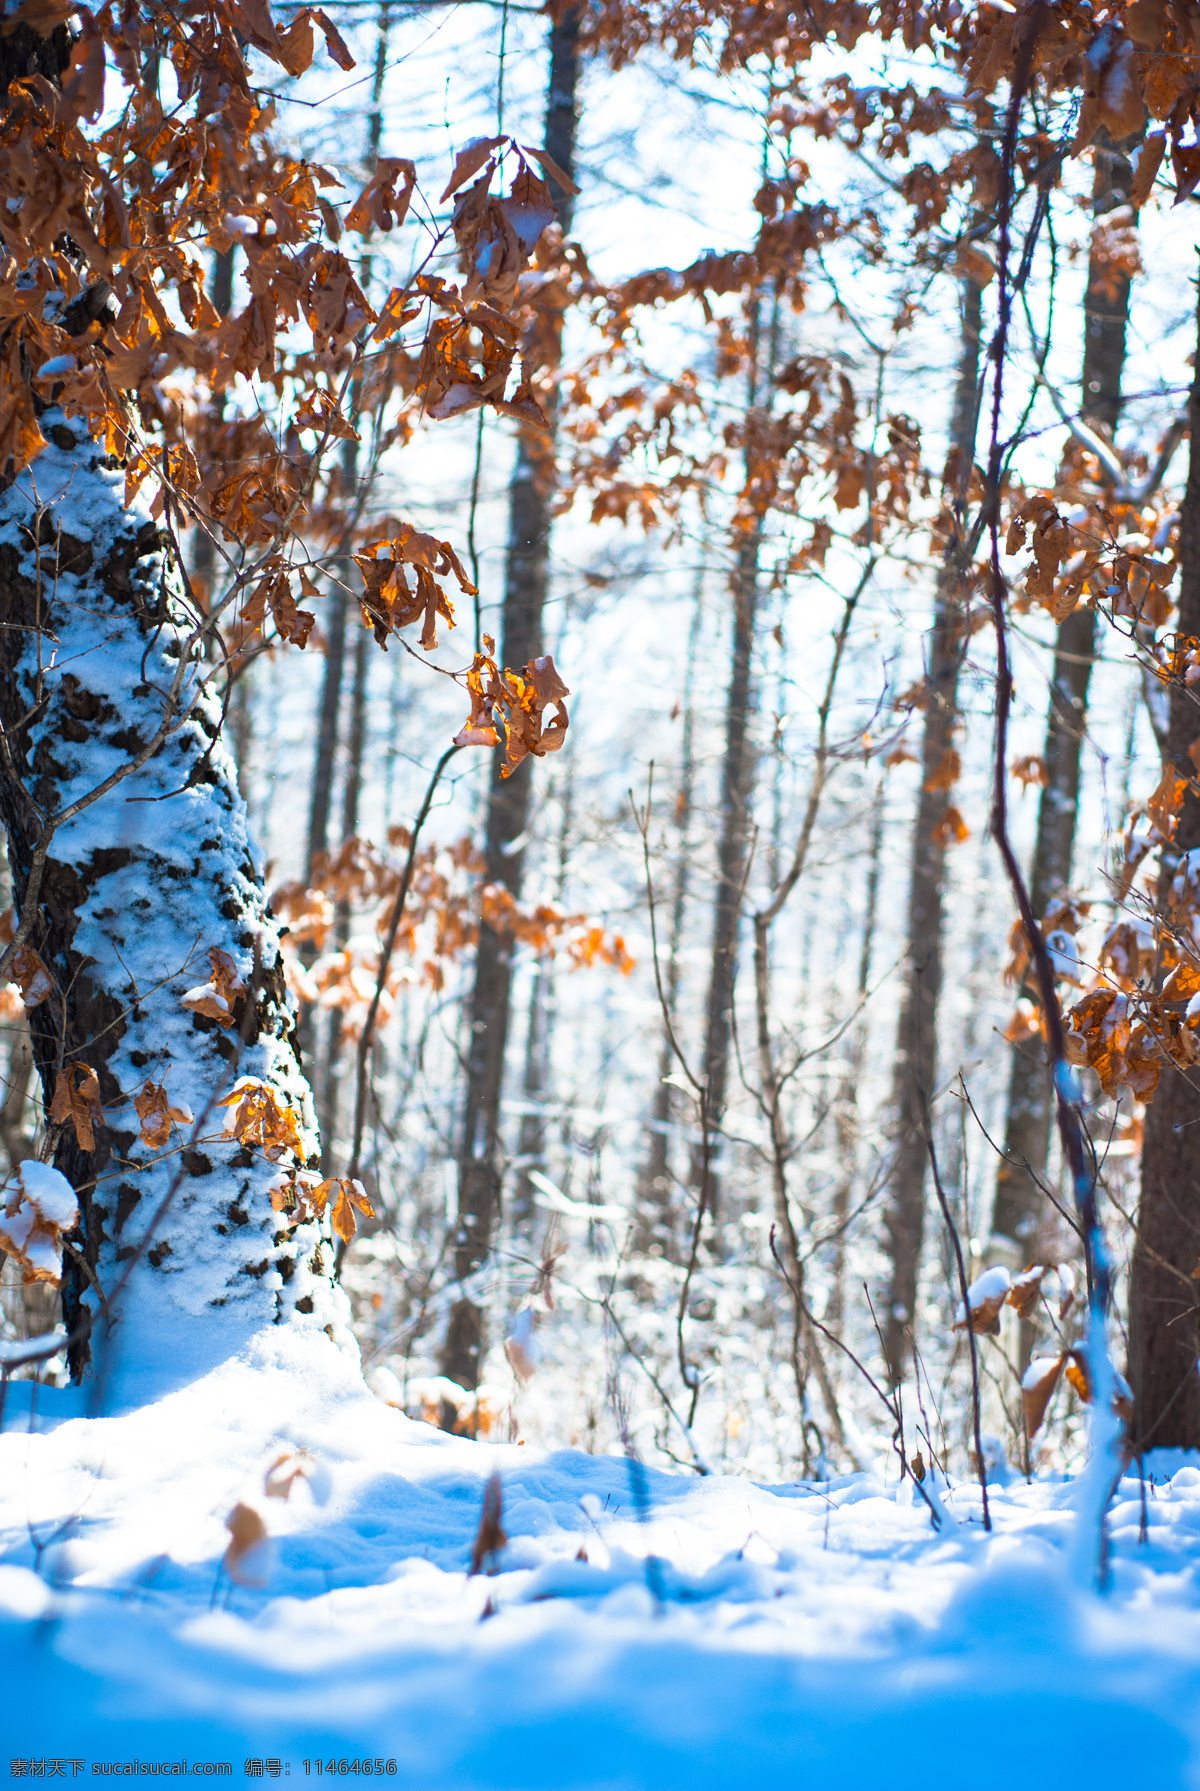 冰天雪地 雪域风光 酷寒 银装素裹 东北雪景 冬季积雪 森林雪景 树林雪景 冬天树林景色 自然景观 自然风景